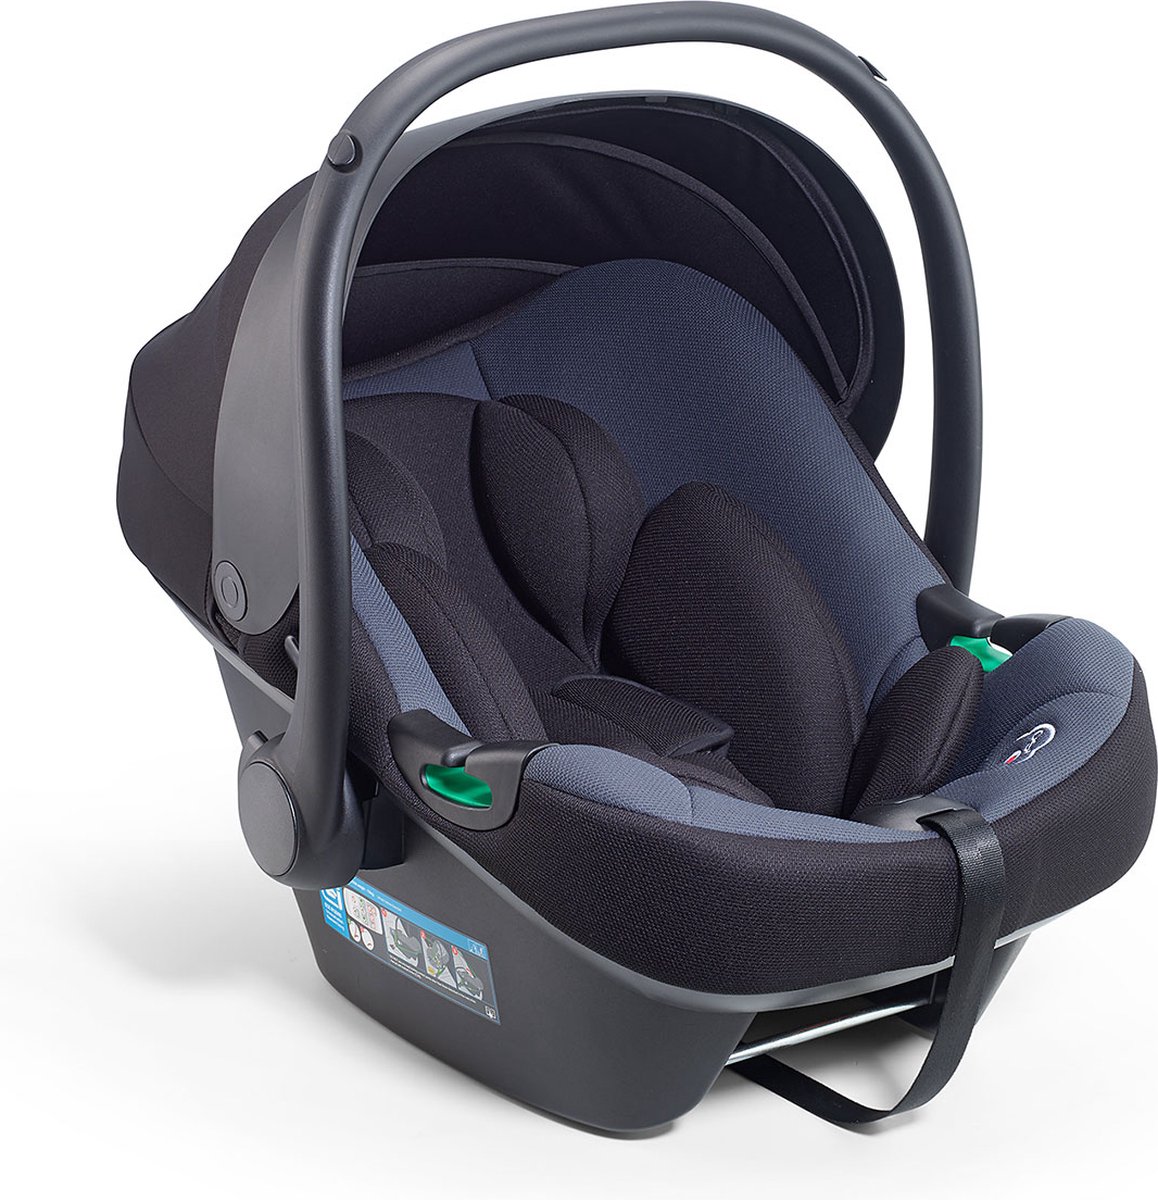 BabyGO iTravel XP i-Size - Autostoel voor kinderen van 40-87cm - Grijs